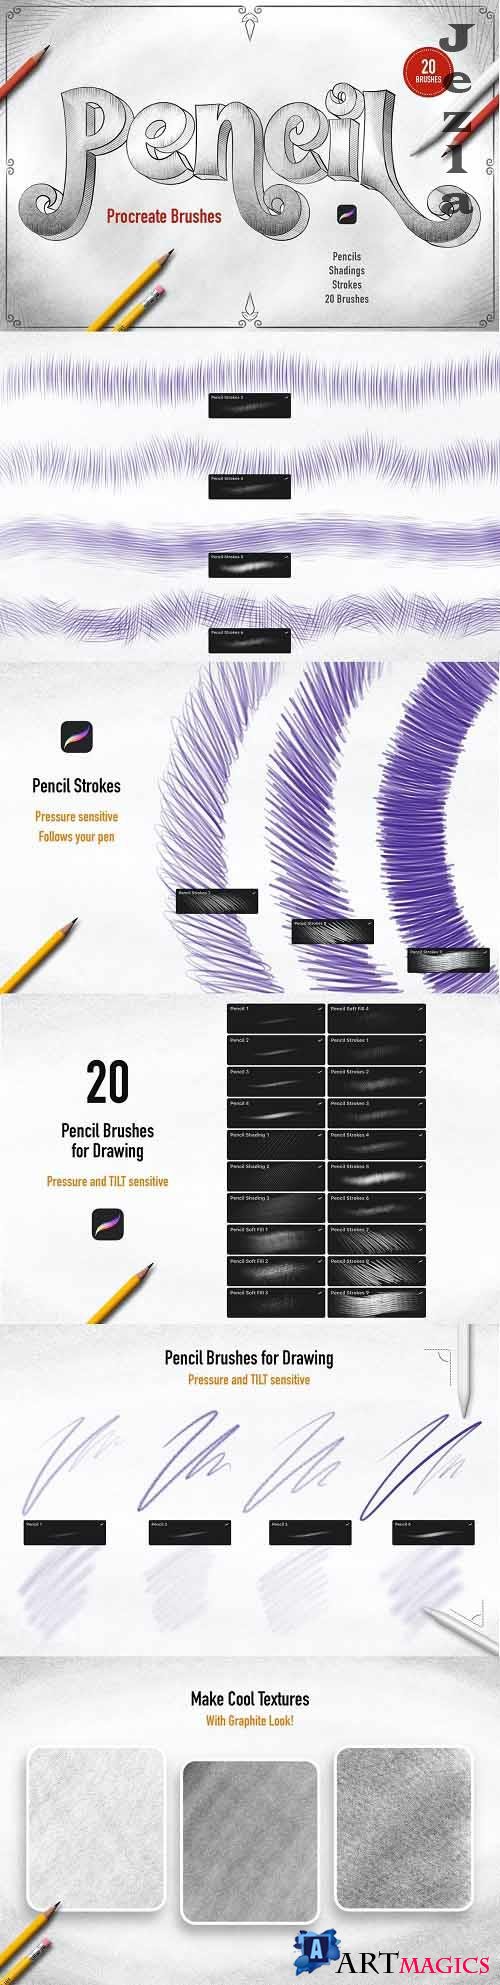 Pencils Procreate Brushes